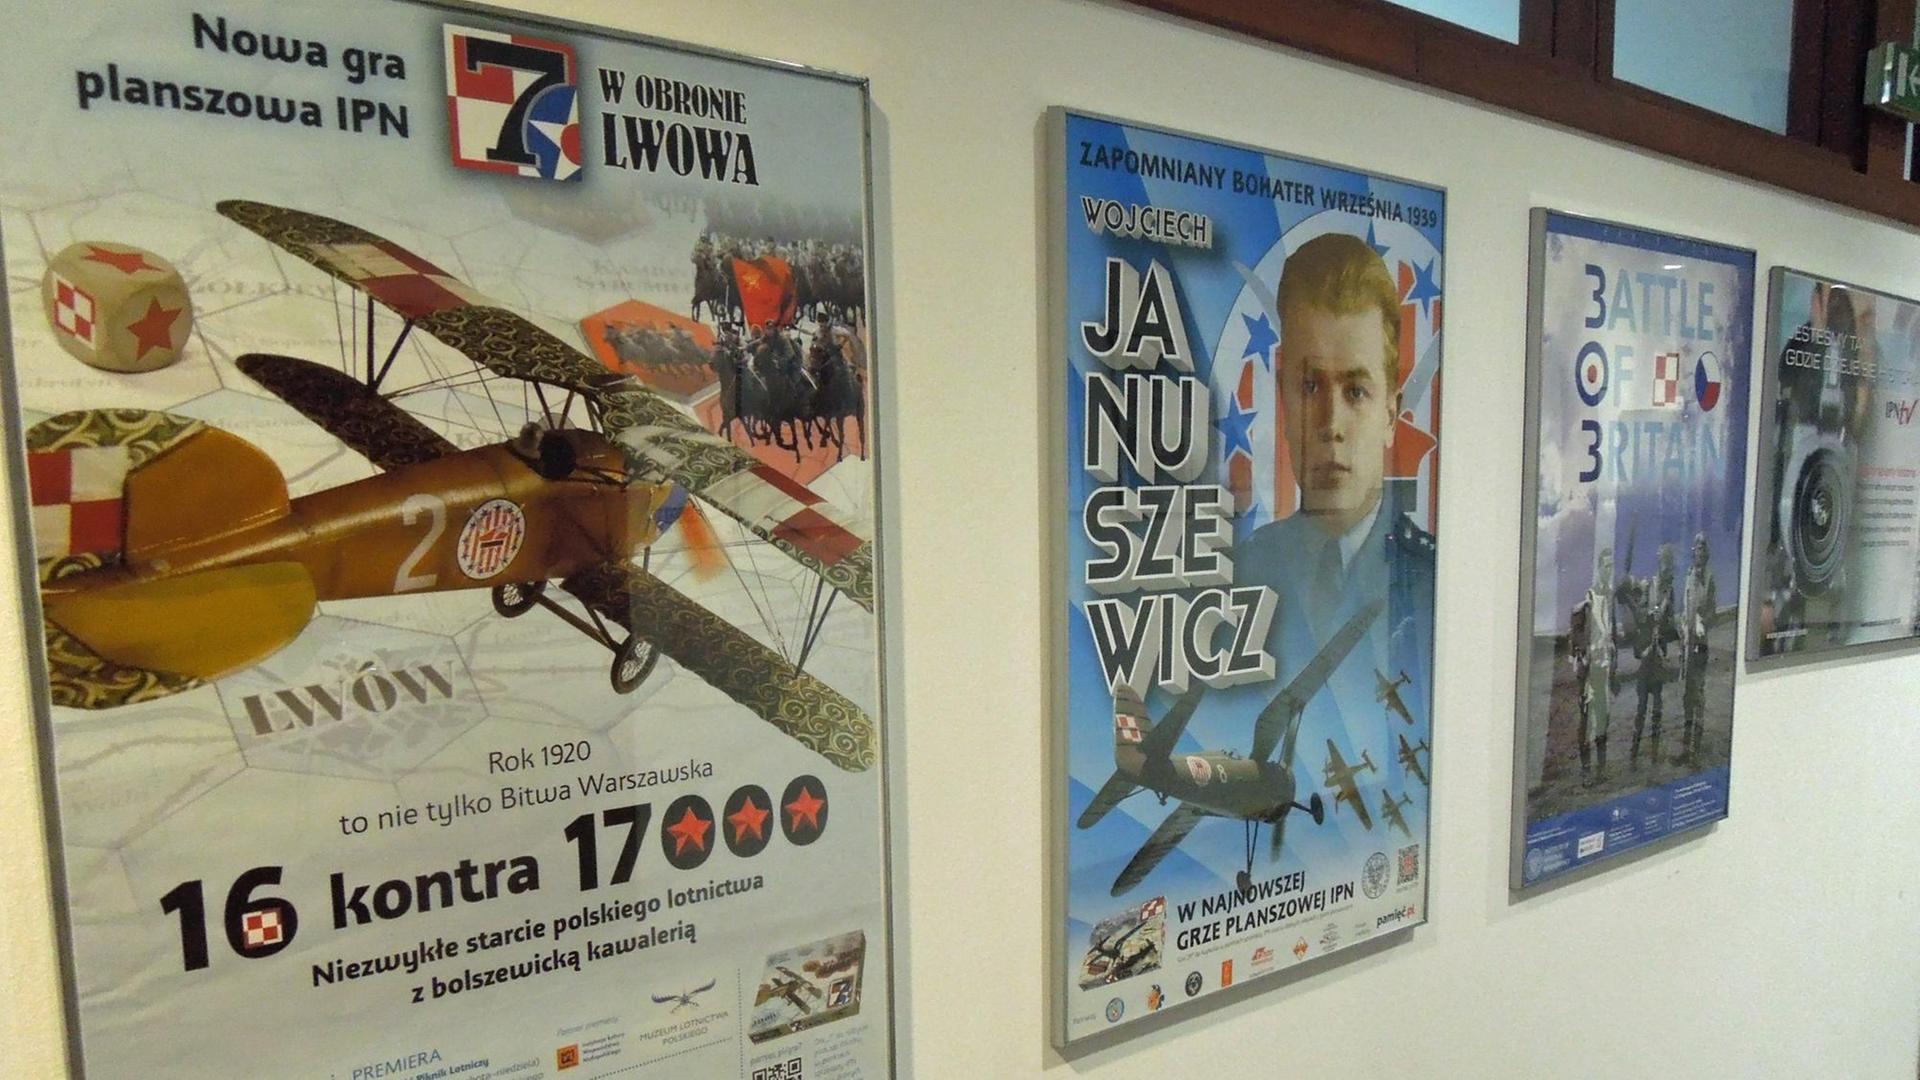 Plakate von Filmprojekten des polnischen Instituts für nationales Gedenken. "16 gegen 17.000" etwa erzählt den Siegreiche polnischen Armee gegen eine sowjetische Übermacht 1920 vor Warschau.